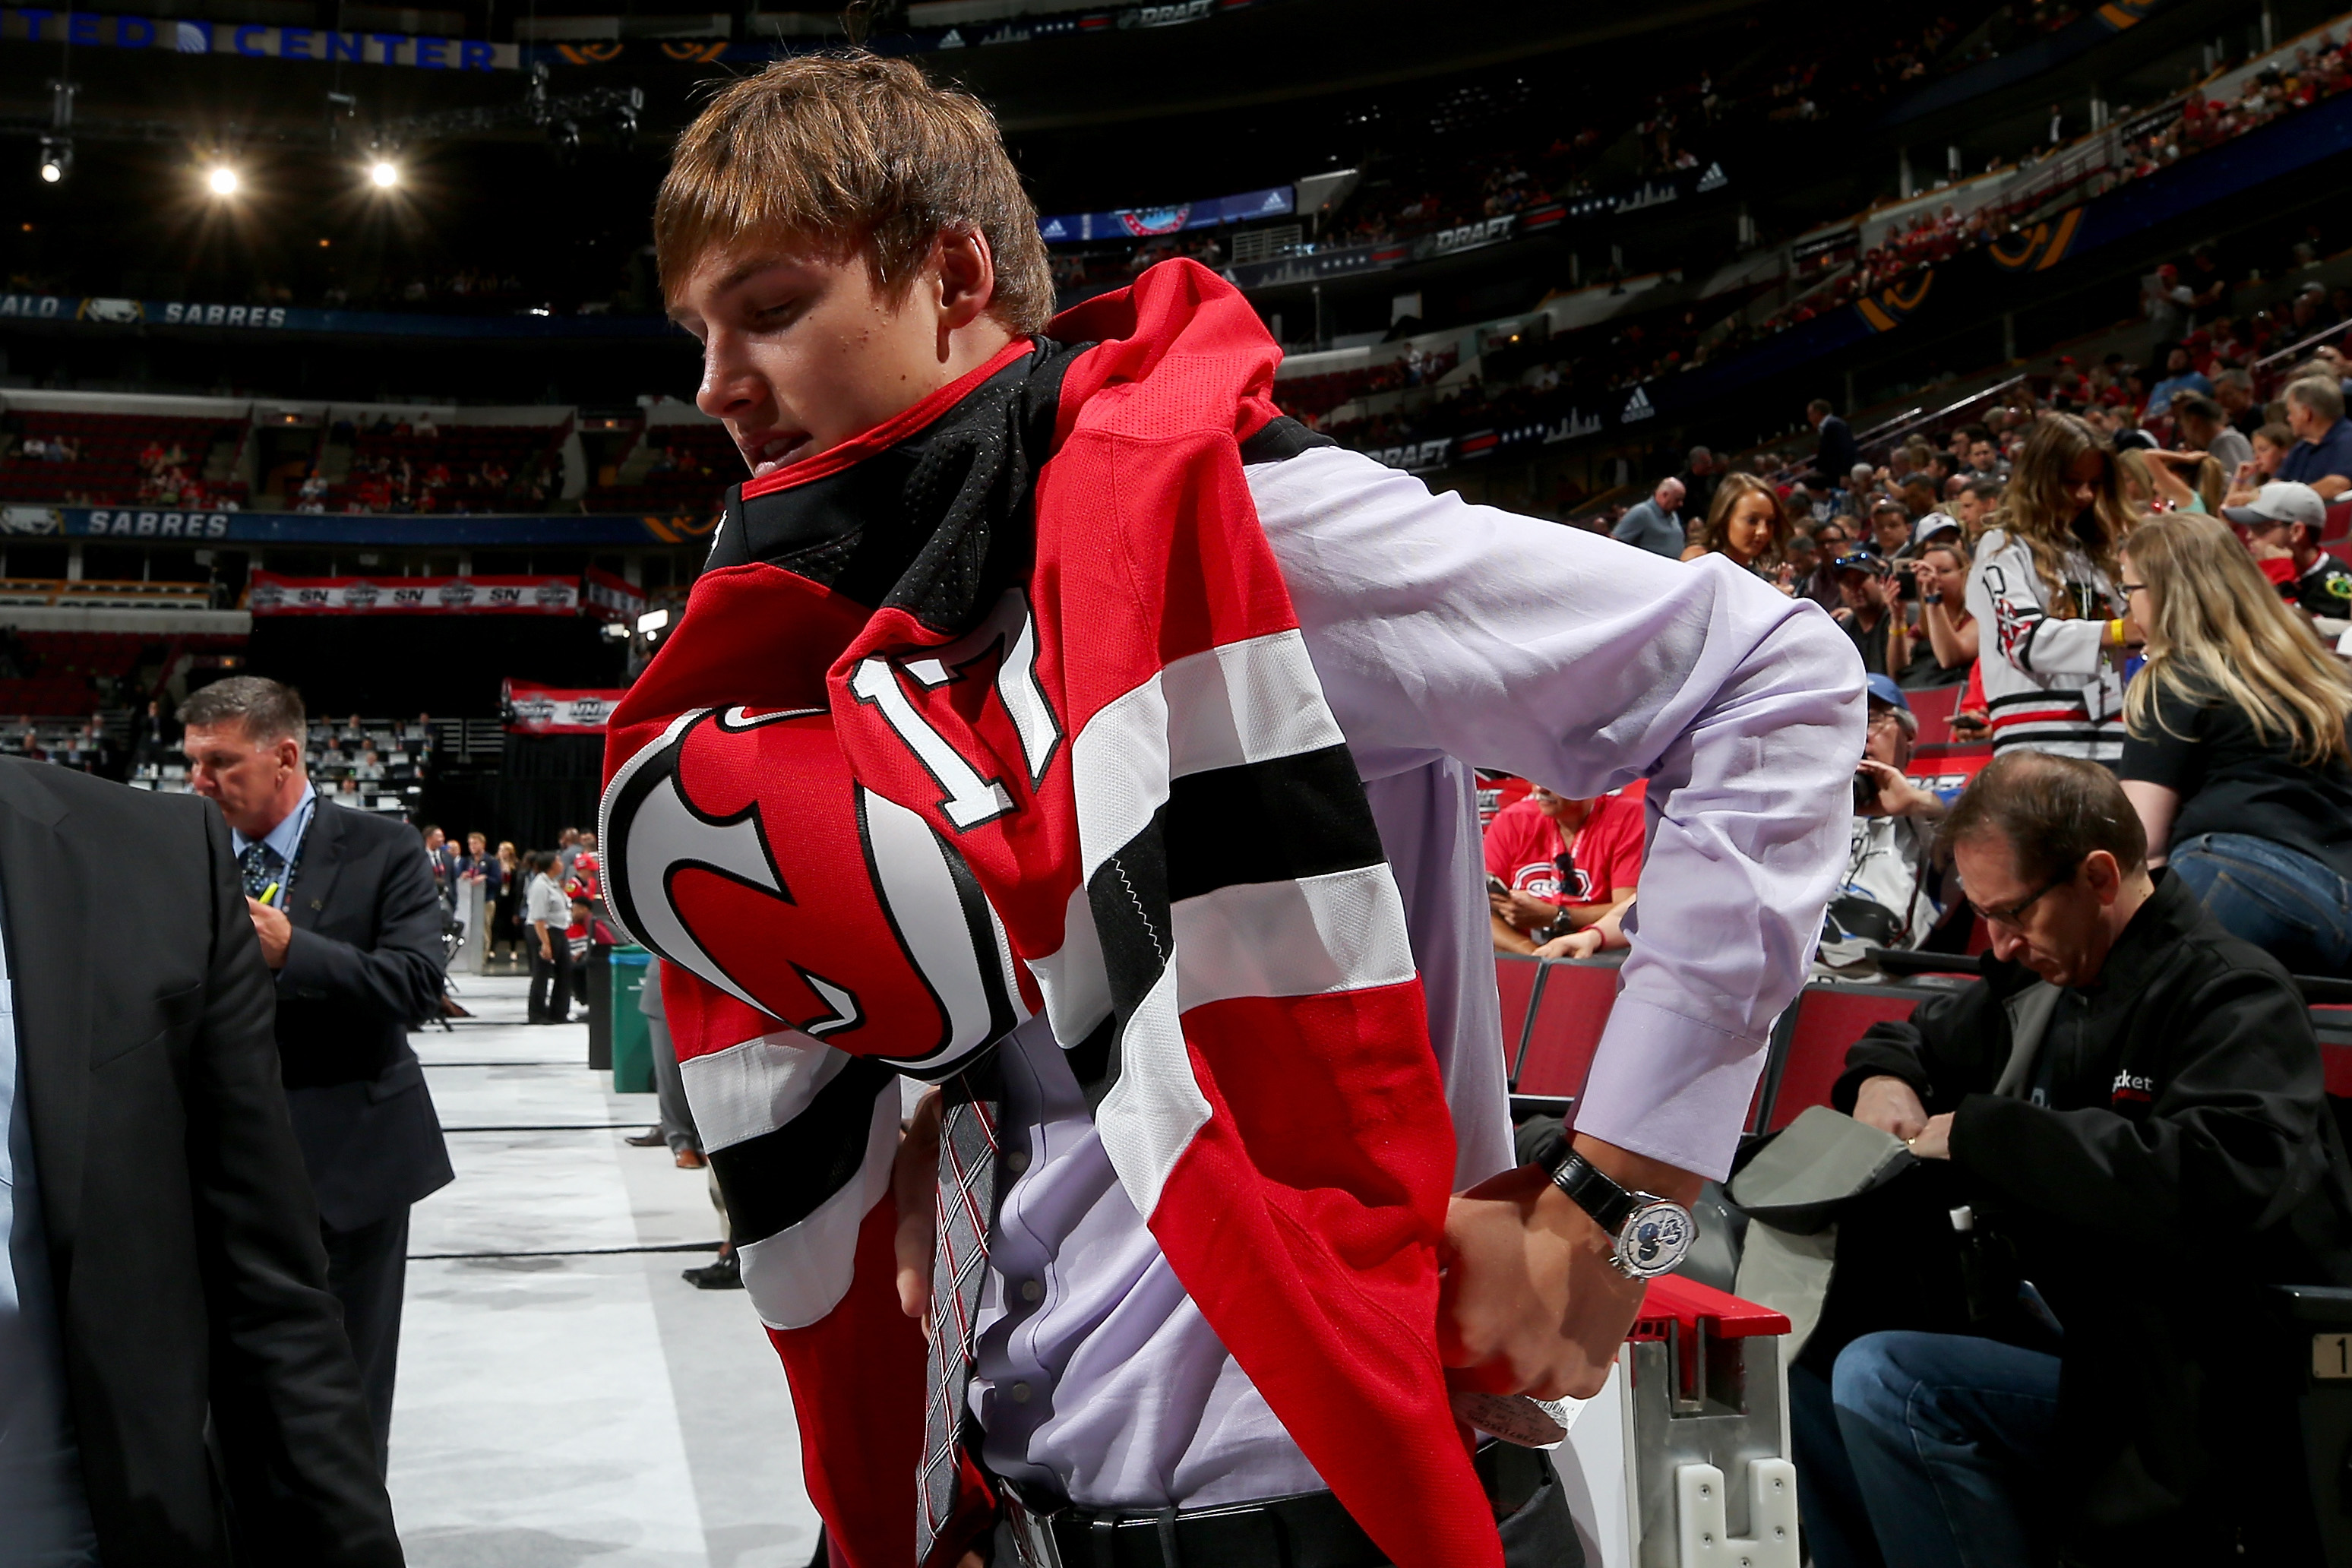 Pavel Datsyuk NHL Fan Jerseys for sale